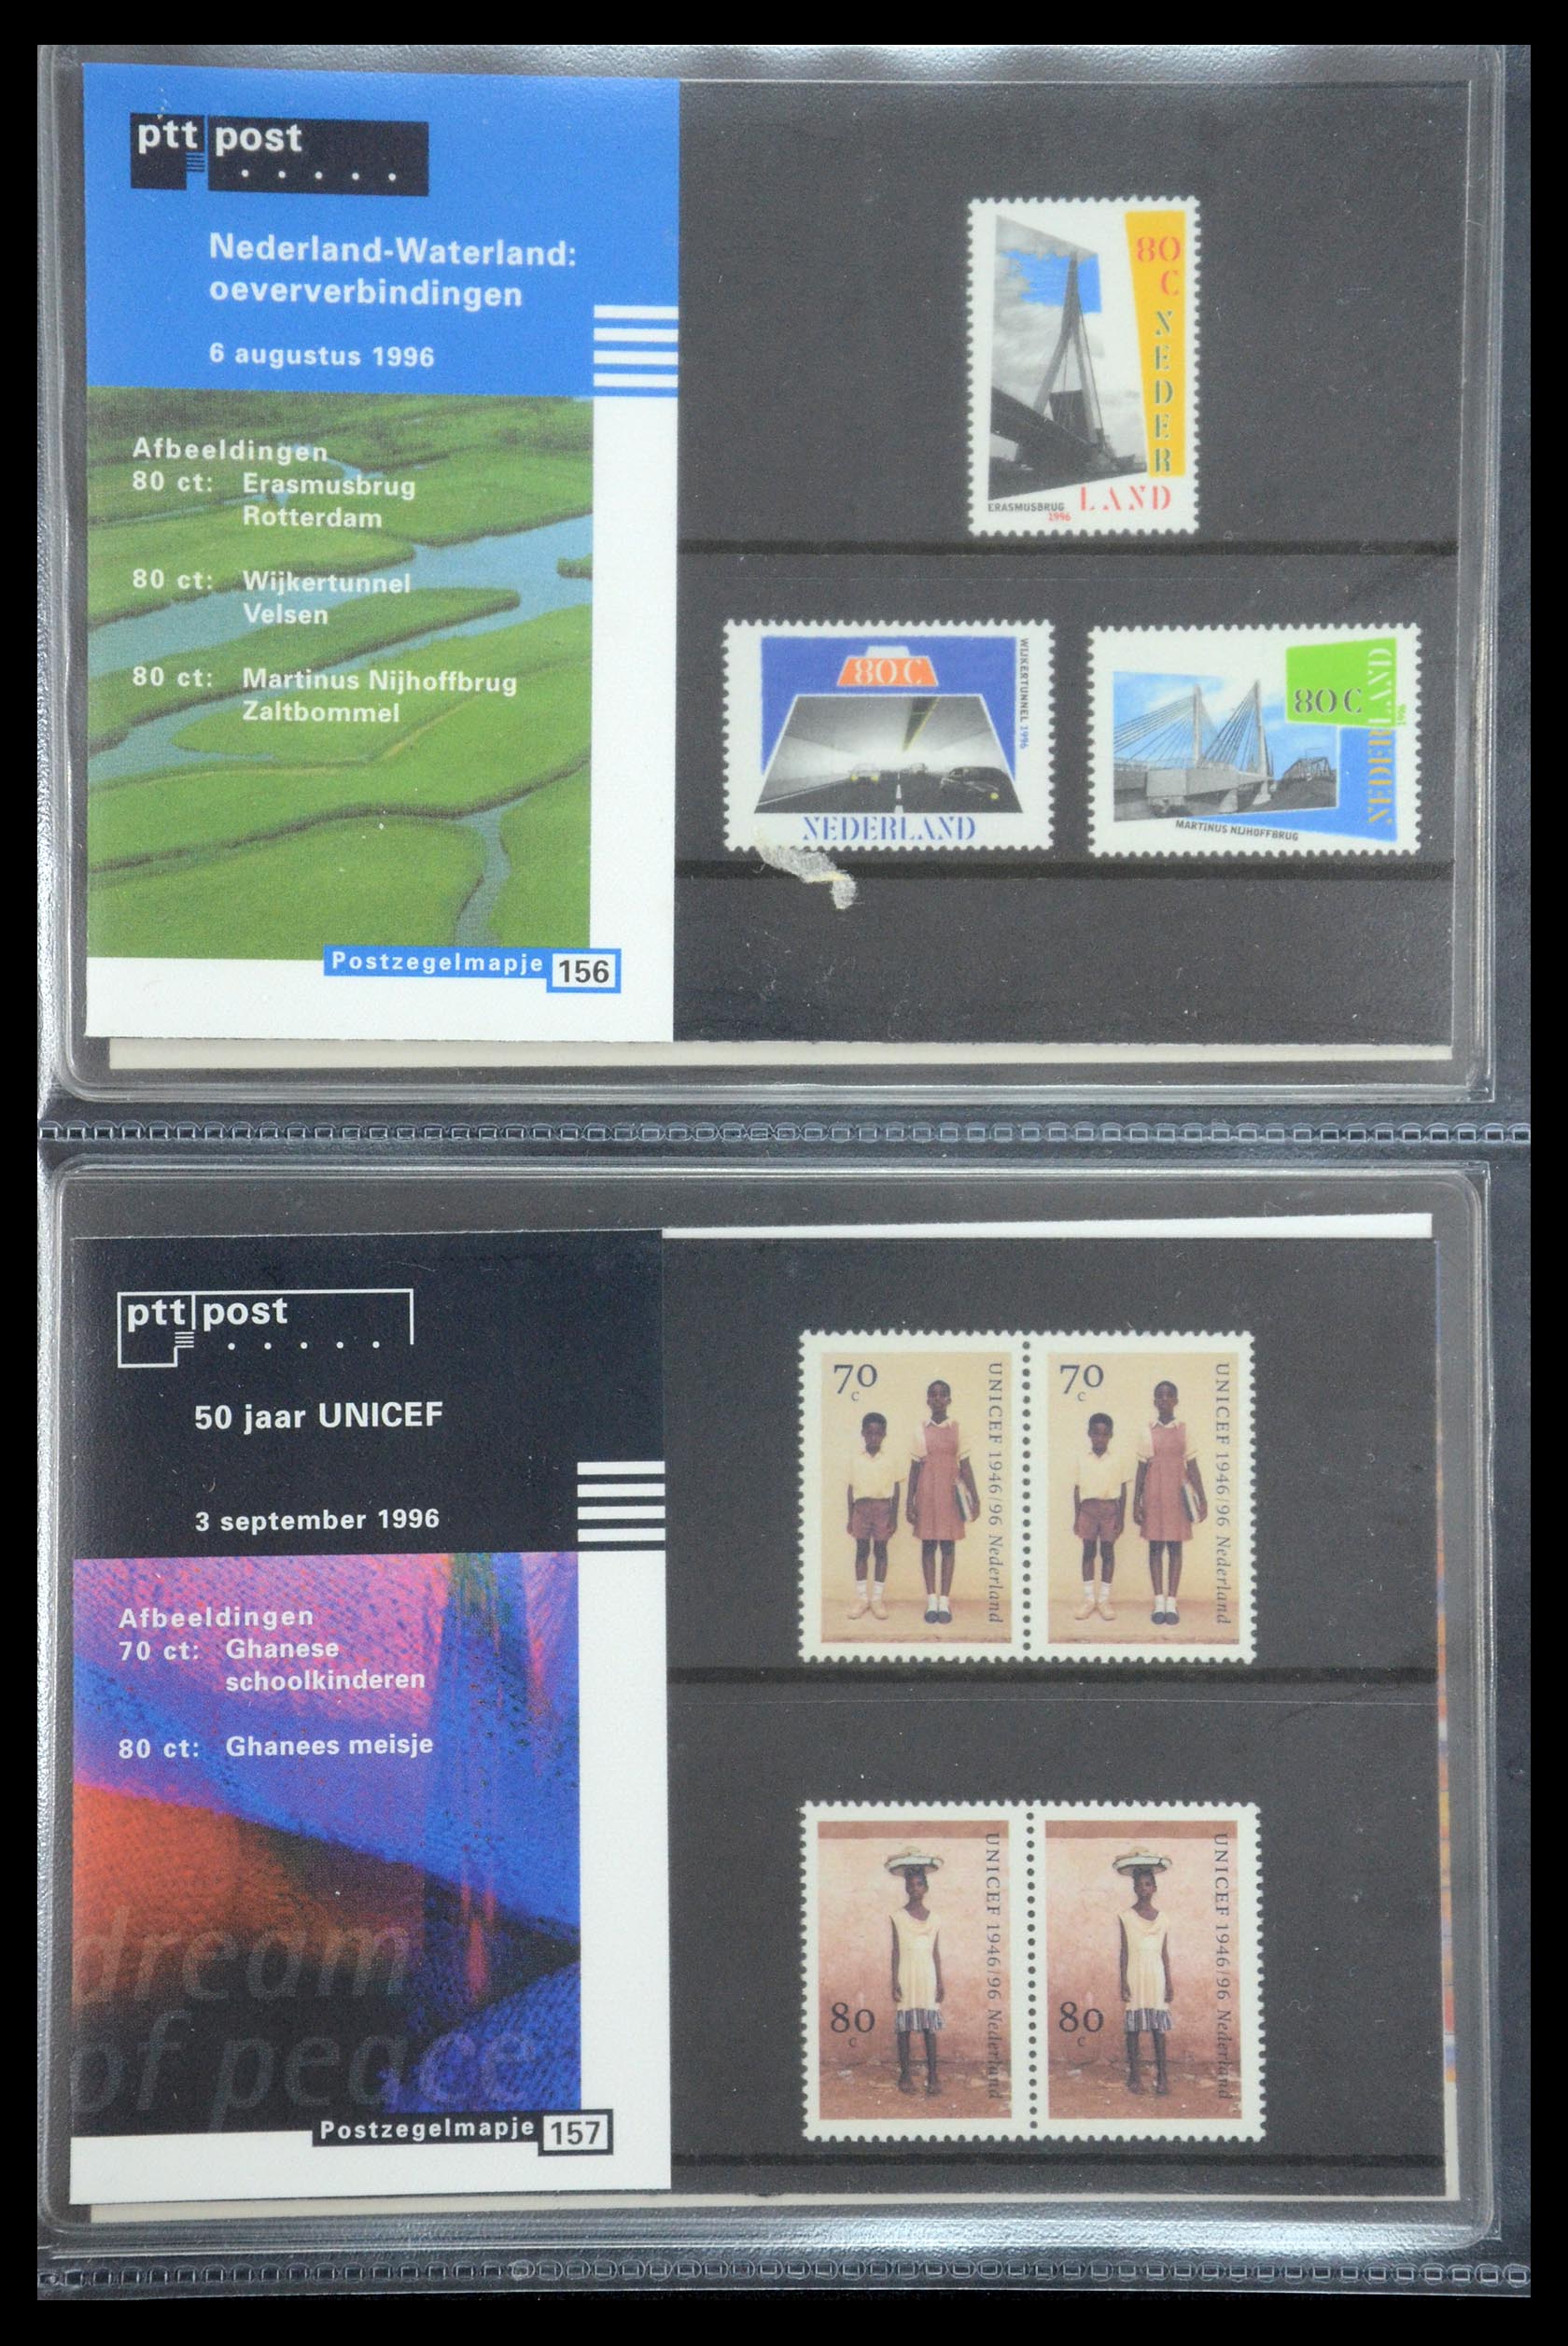 35187 080 - Stamp Collection 35187 Netherlands PTT presentation packs 1982-2019!